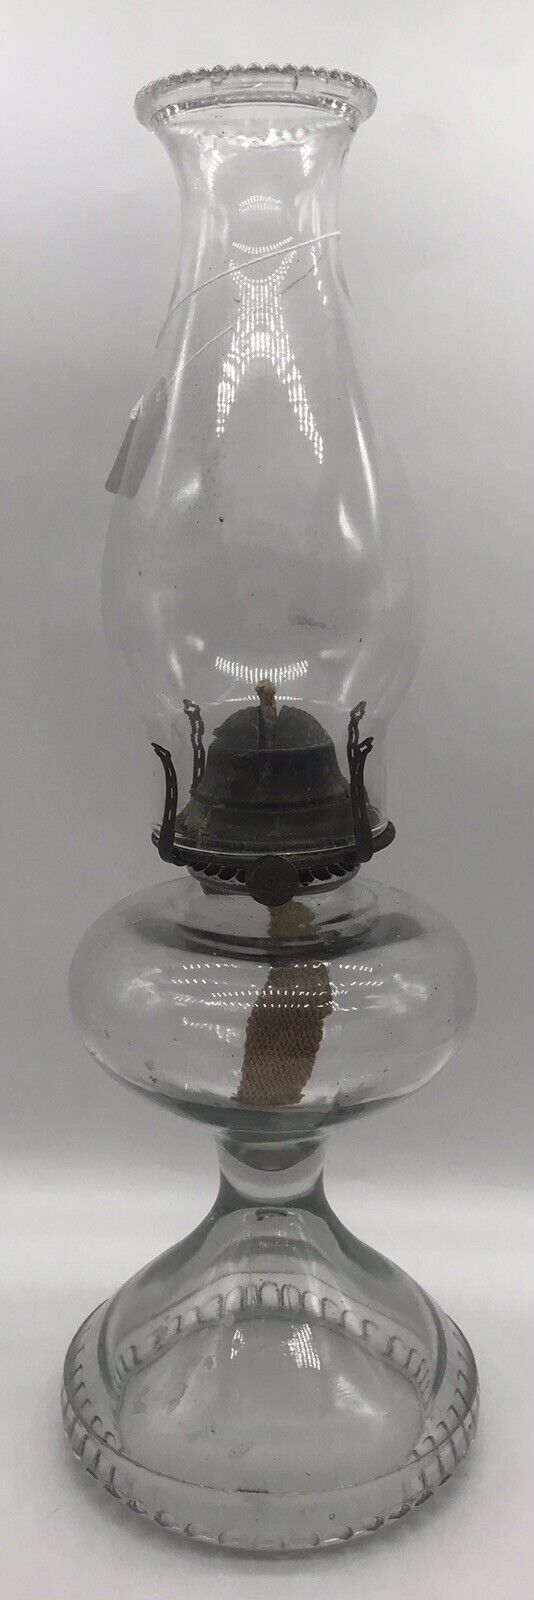 VINTAGE PATENTED SEP 19 & NOV 14-1911 GLASS OIL LAMP-BANNER BURNER